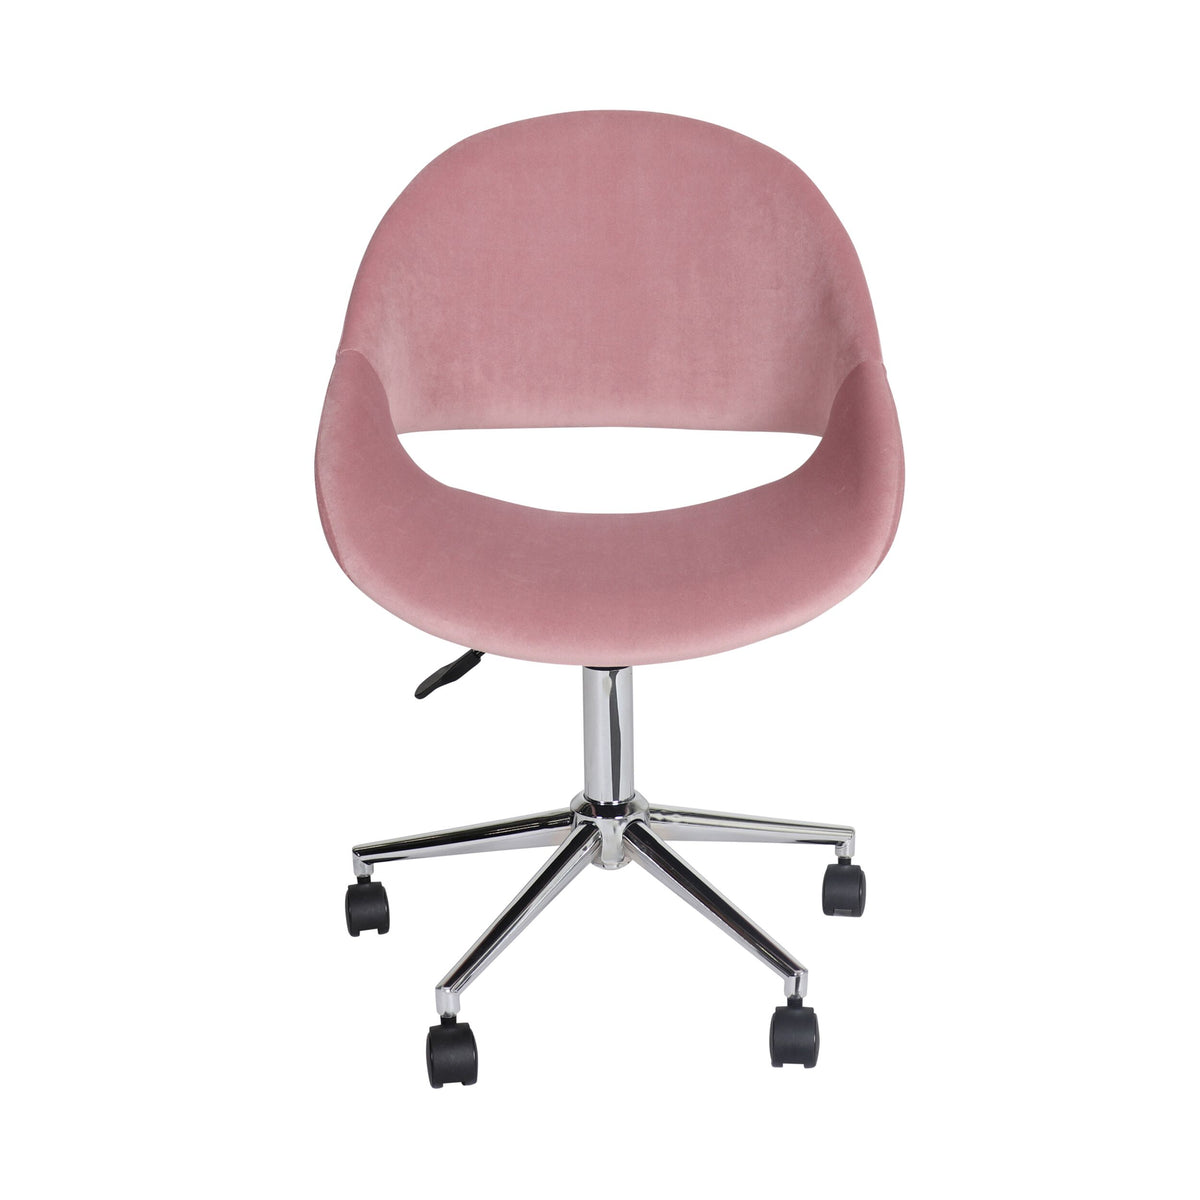 Kip Velvet Desk Chair Dusty Pink – Early Settler AU